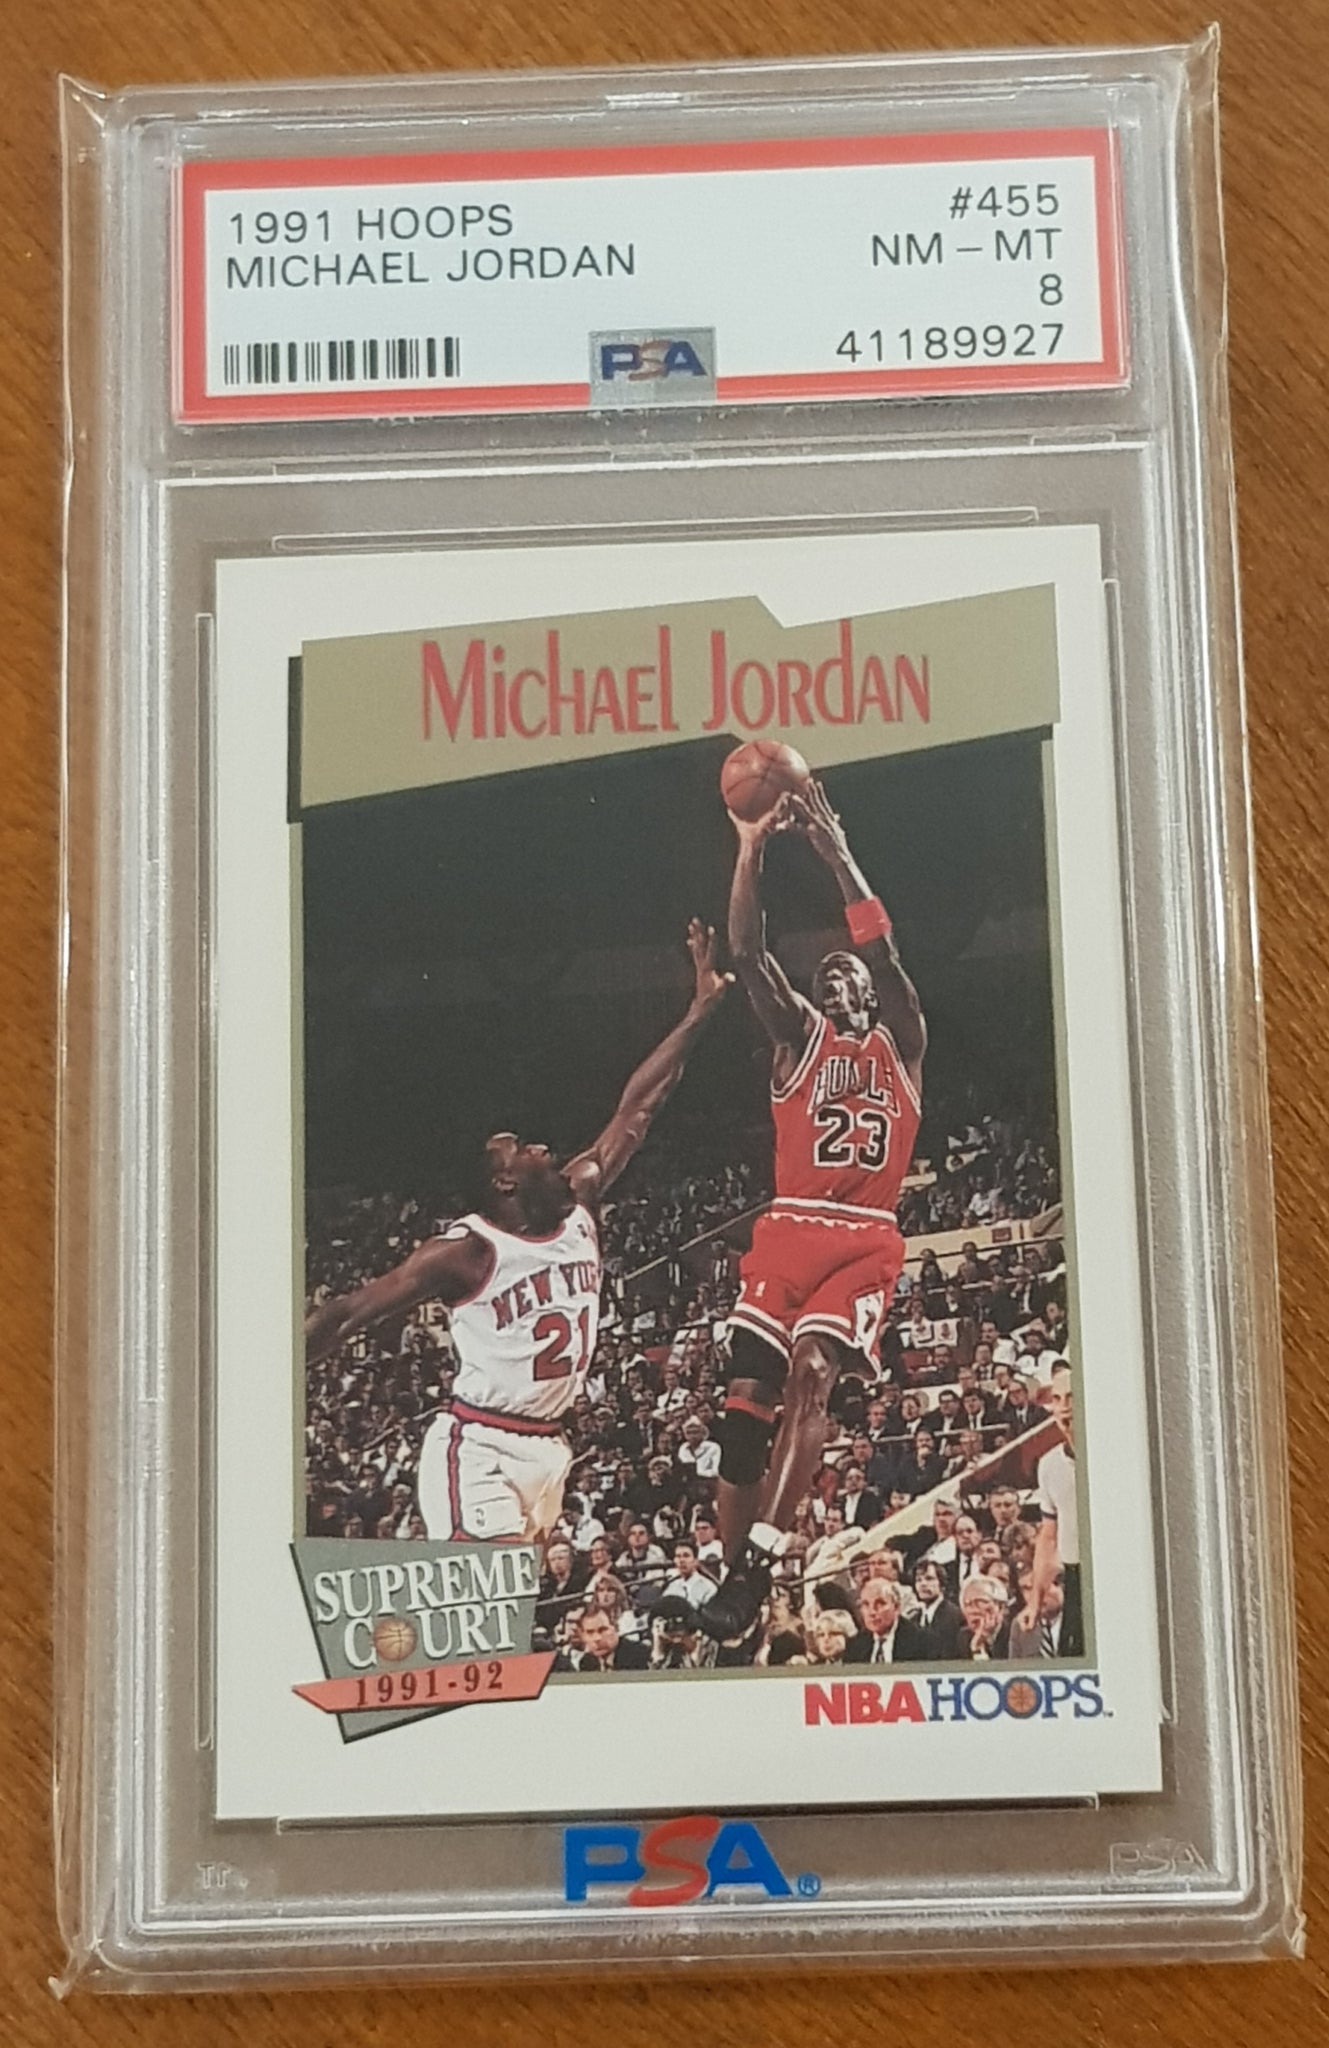 1991 NBA Hoops Michael Jordan #455 PSA 8 Trading Card